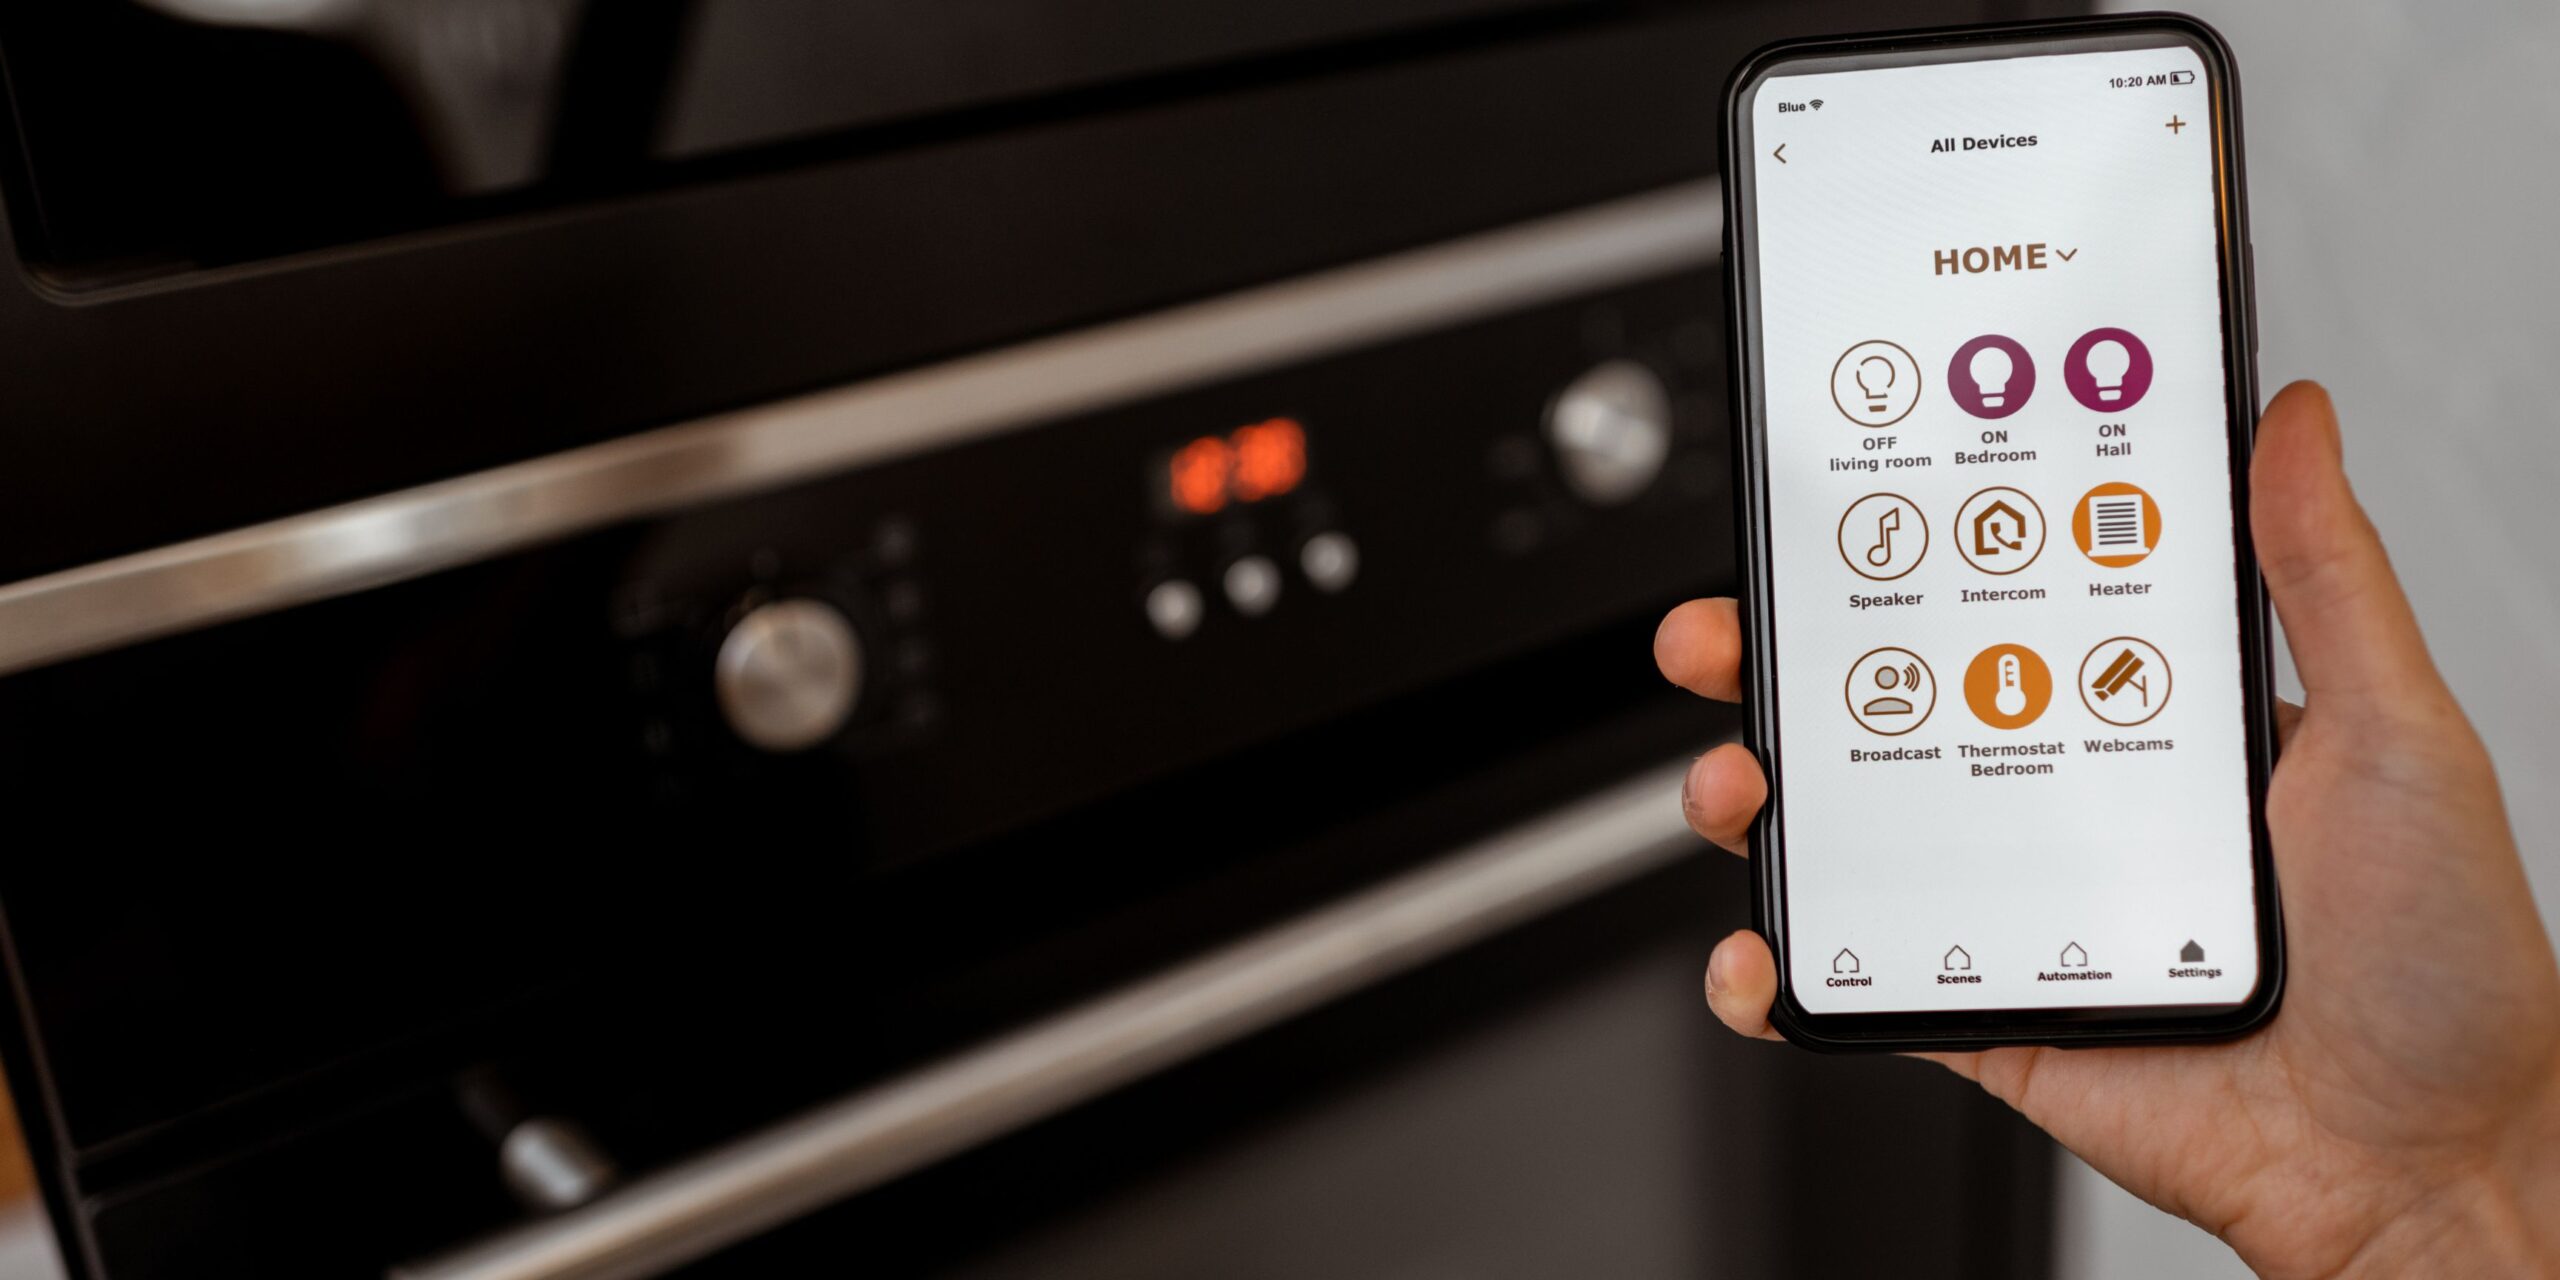 Smart Ovens Market